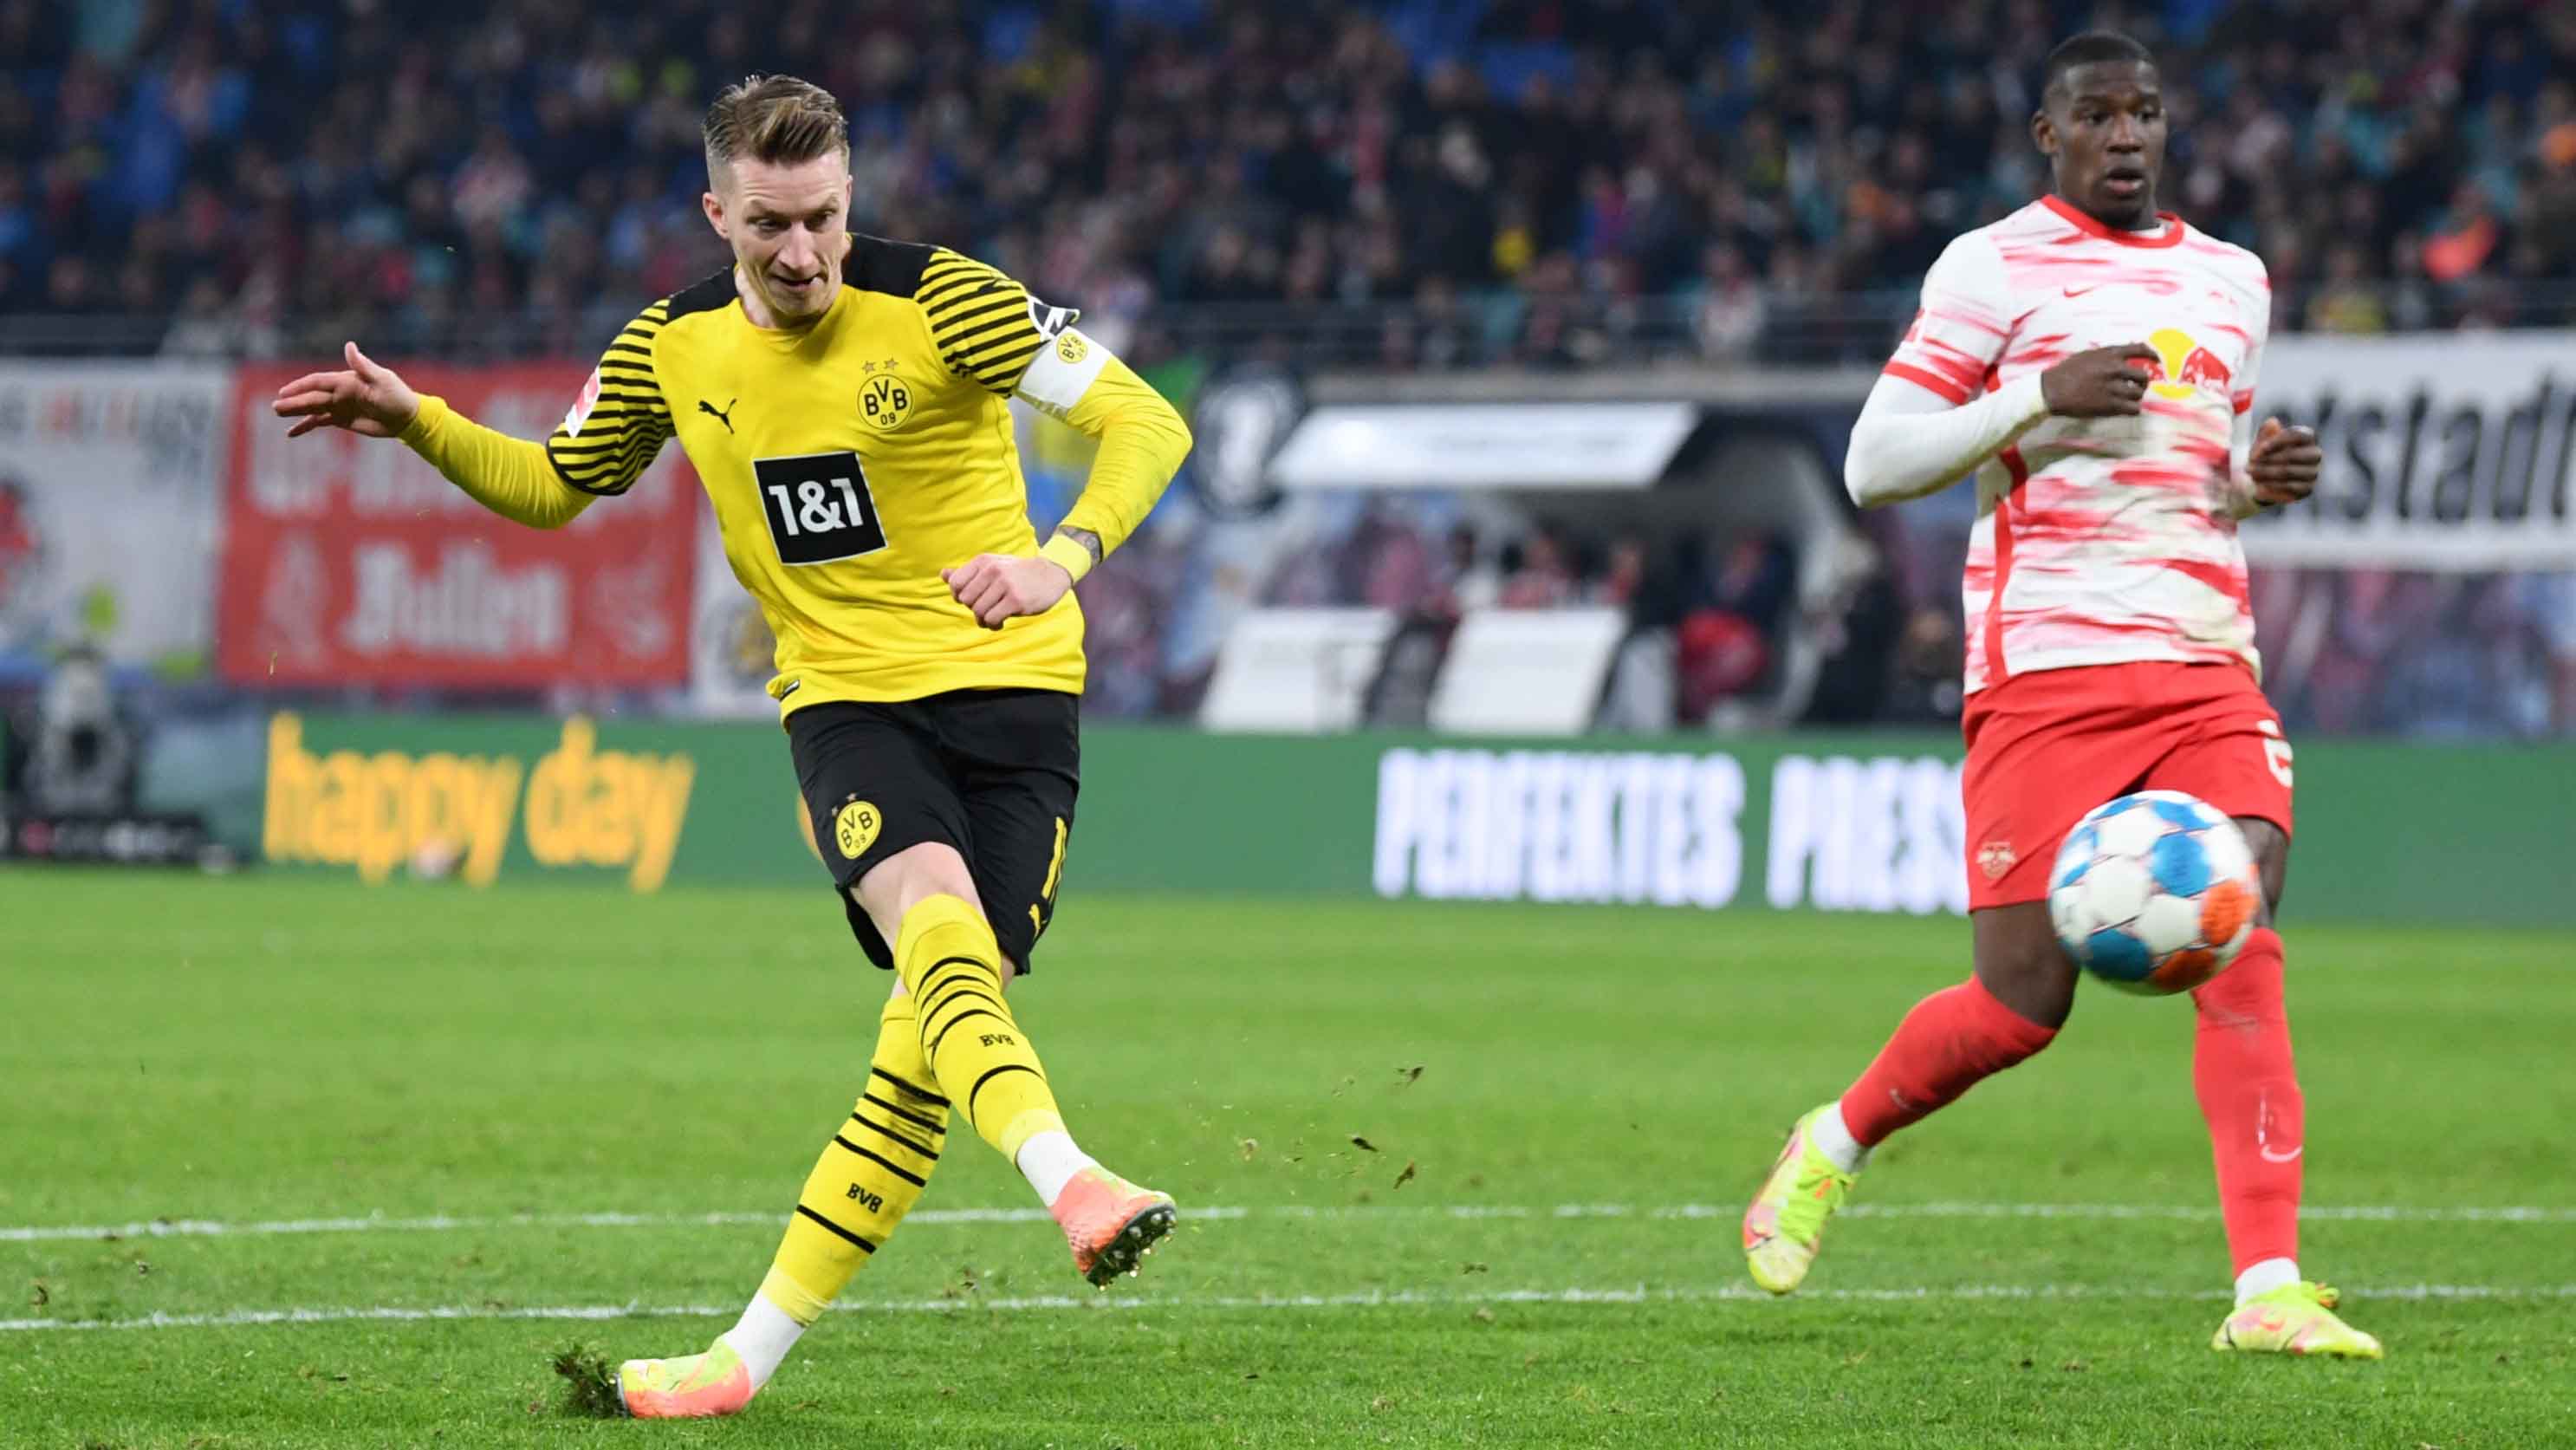 6. Borussia Dortmund: 11 kilómetros. 624.6 pases, 17.6 metros por pase en 12 partidos